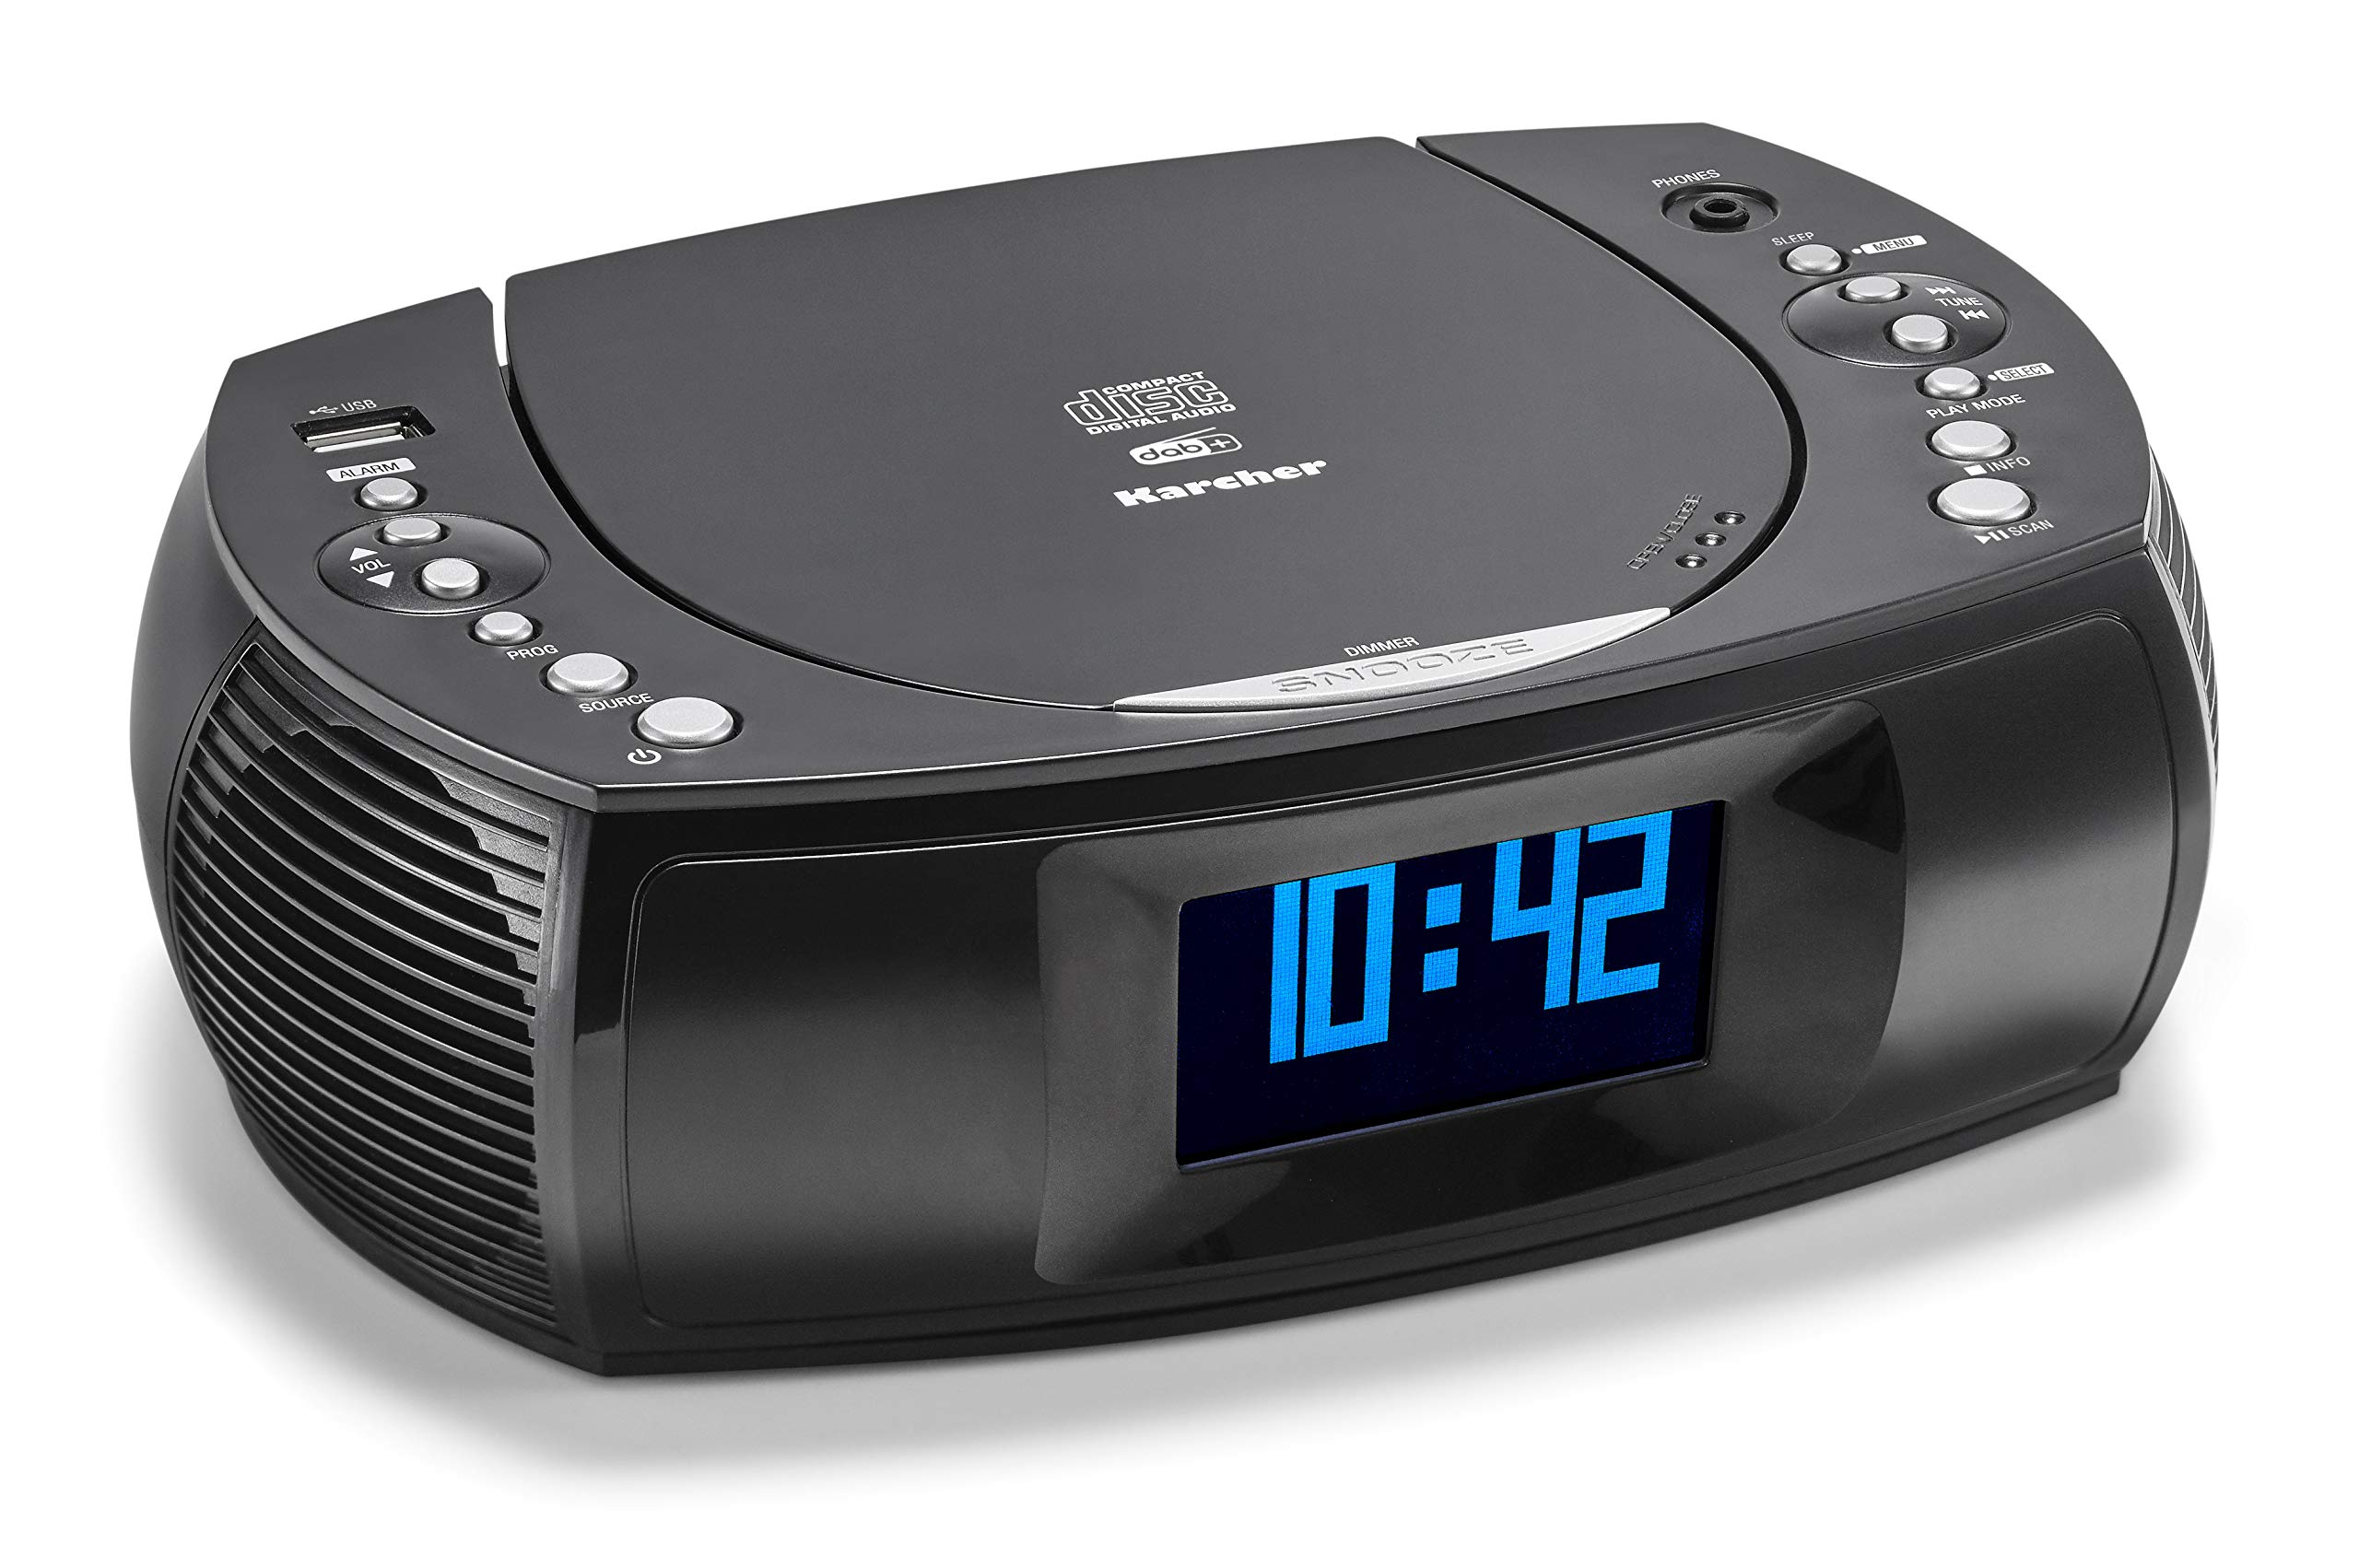 Karcher UR 1309D - Digitaler Radiowecker mit MP3 / CD-Player und DAB plus Radio, Wecker mit zwei einstellbaren Weckzeiten, dimmbares Display, Uhrenradio, USB-Ladefunktion, schwarzes Radio mit Wecker